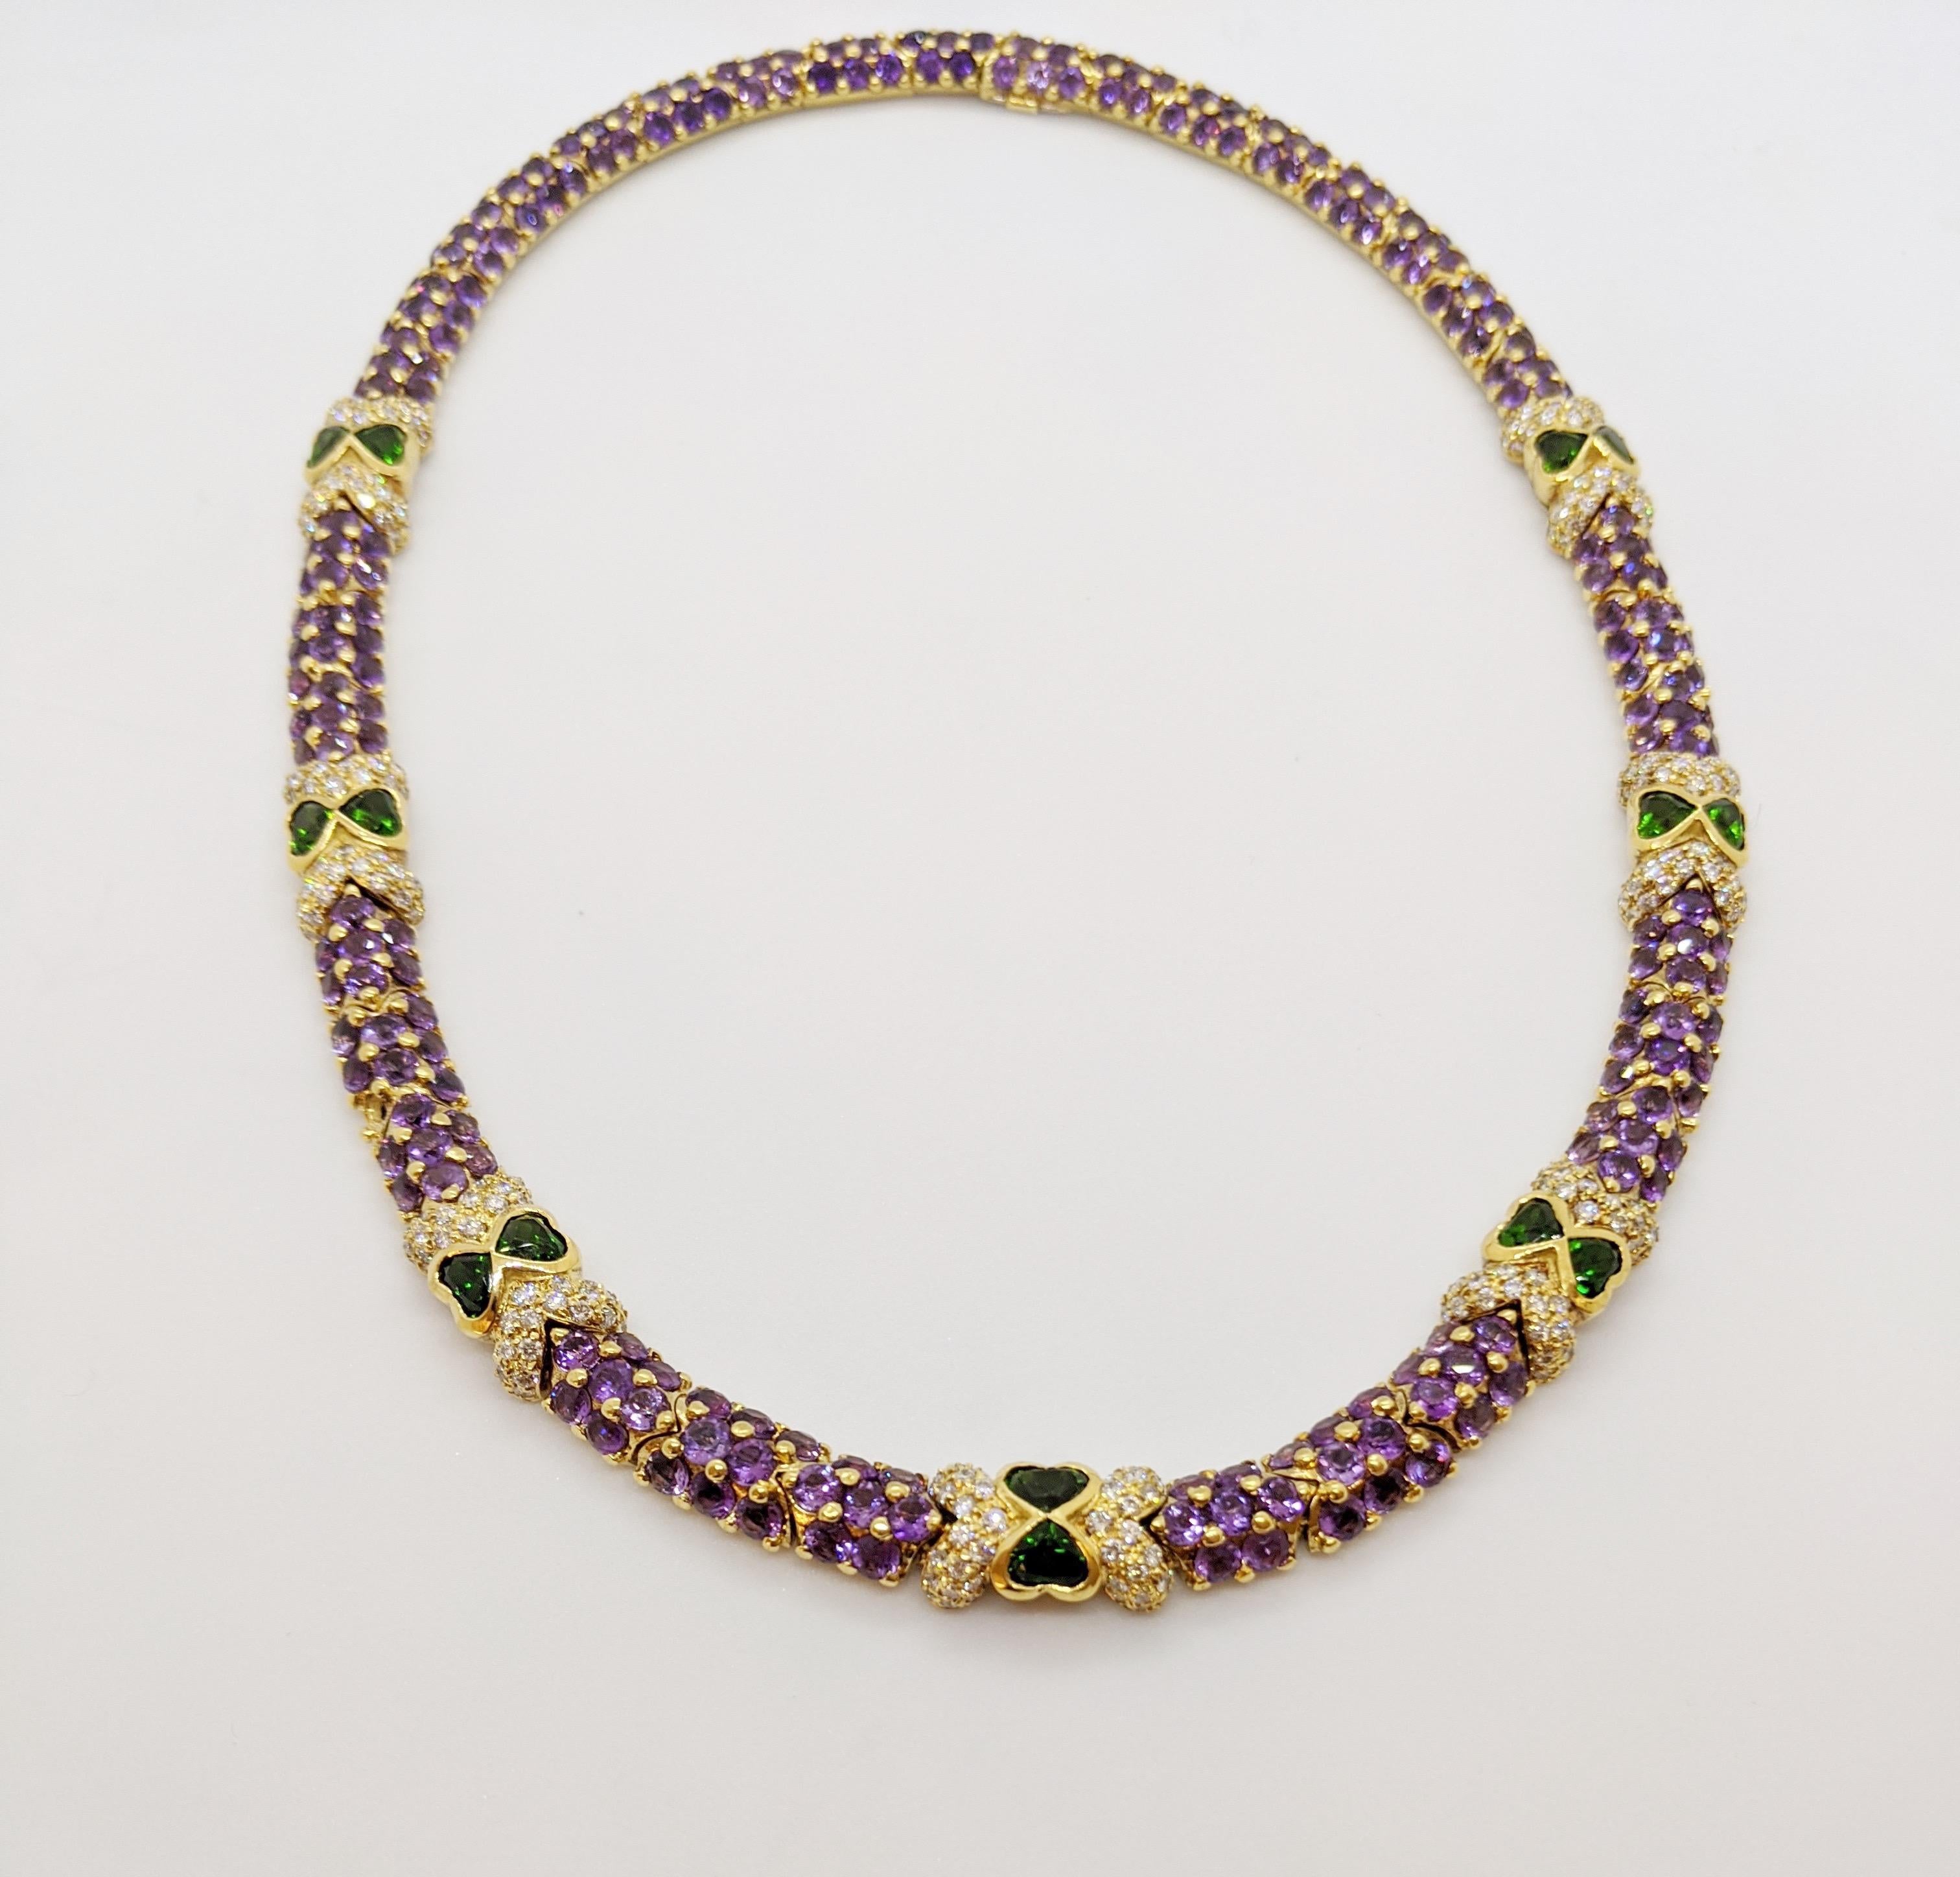 Ce collier a été conçu par G. Verdi en Italie. Les pierres rondes et brillantes de l'améthyste sont serties dans une pierre de 18 carats  or jaune  les maillons sont dotés d'un système d'attaches qui donne un bel effet perlé. Des diamants ronds et